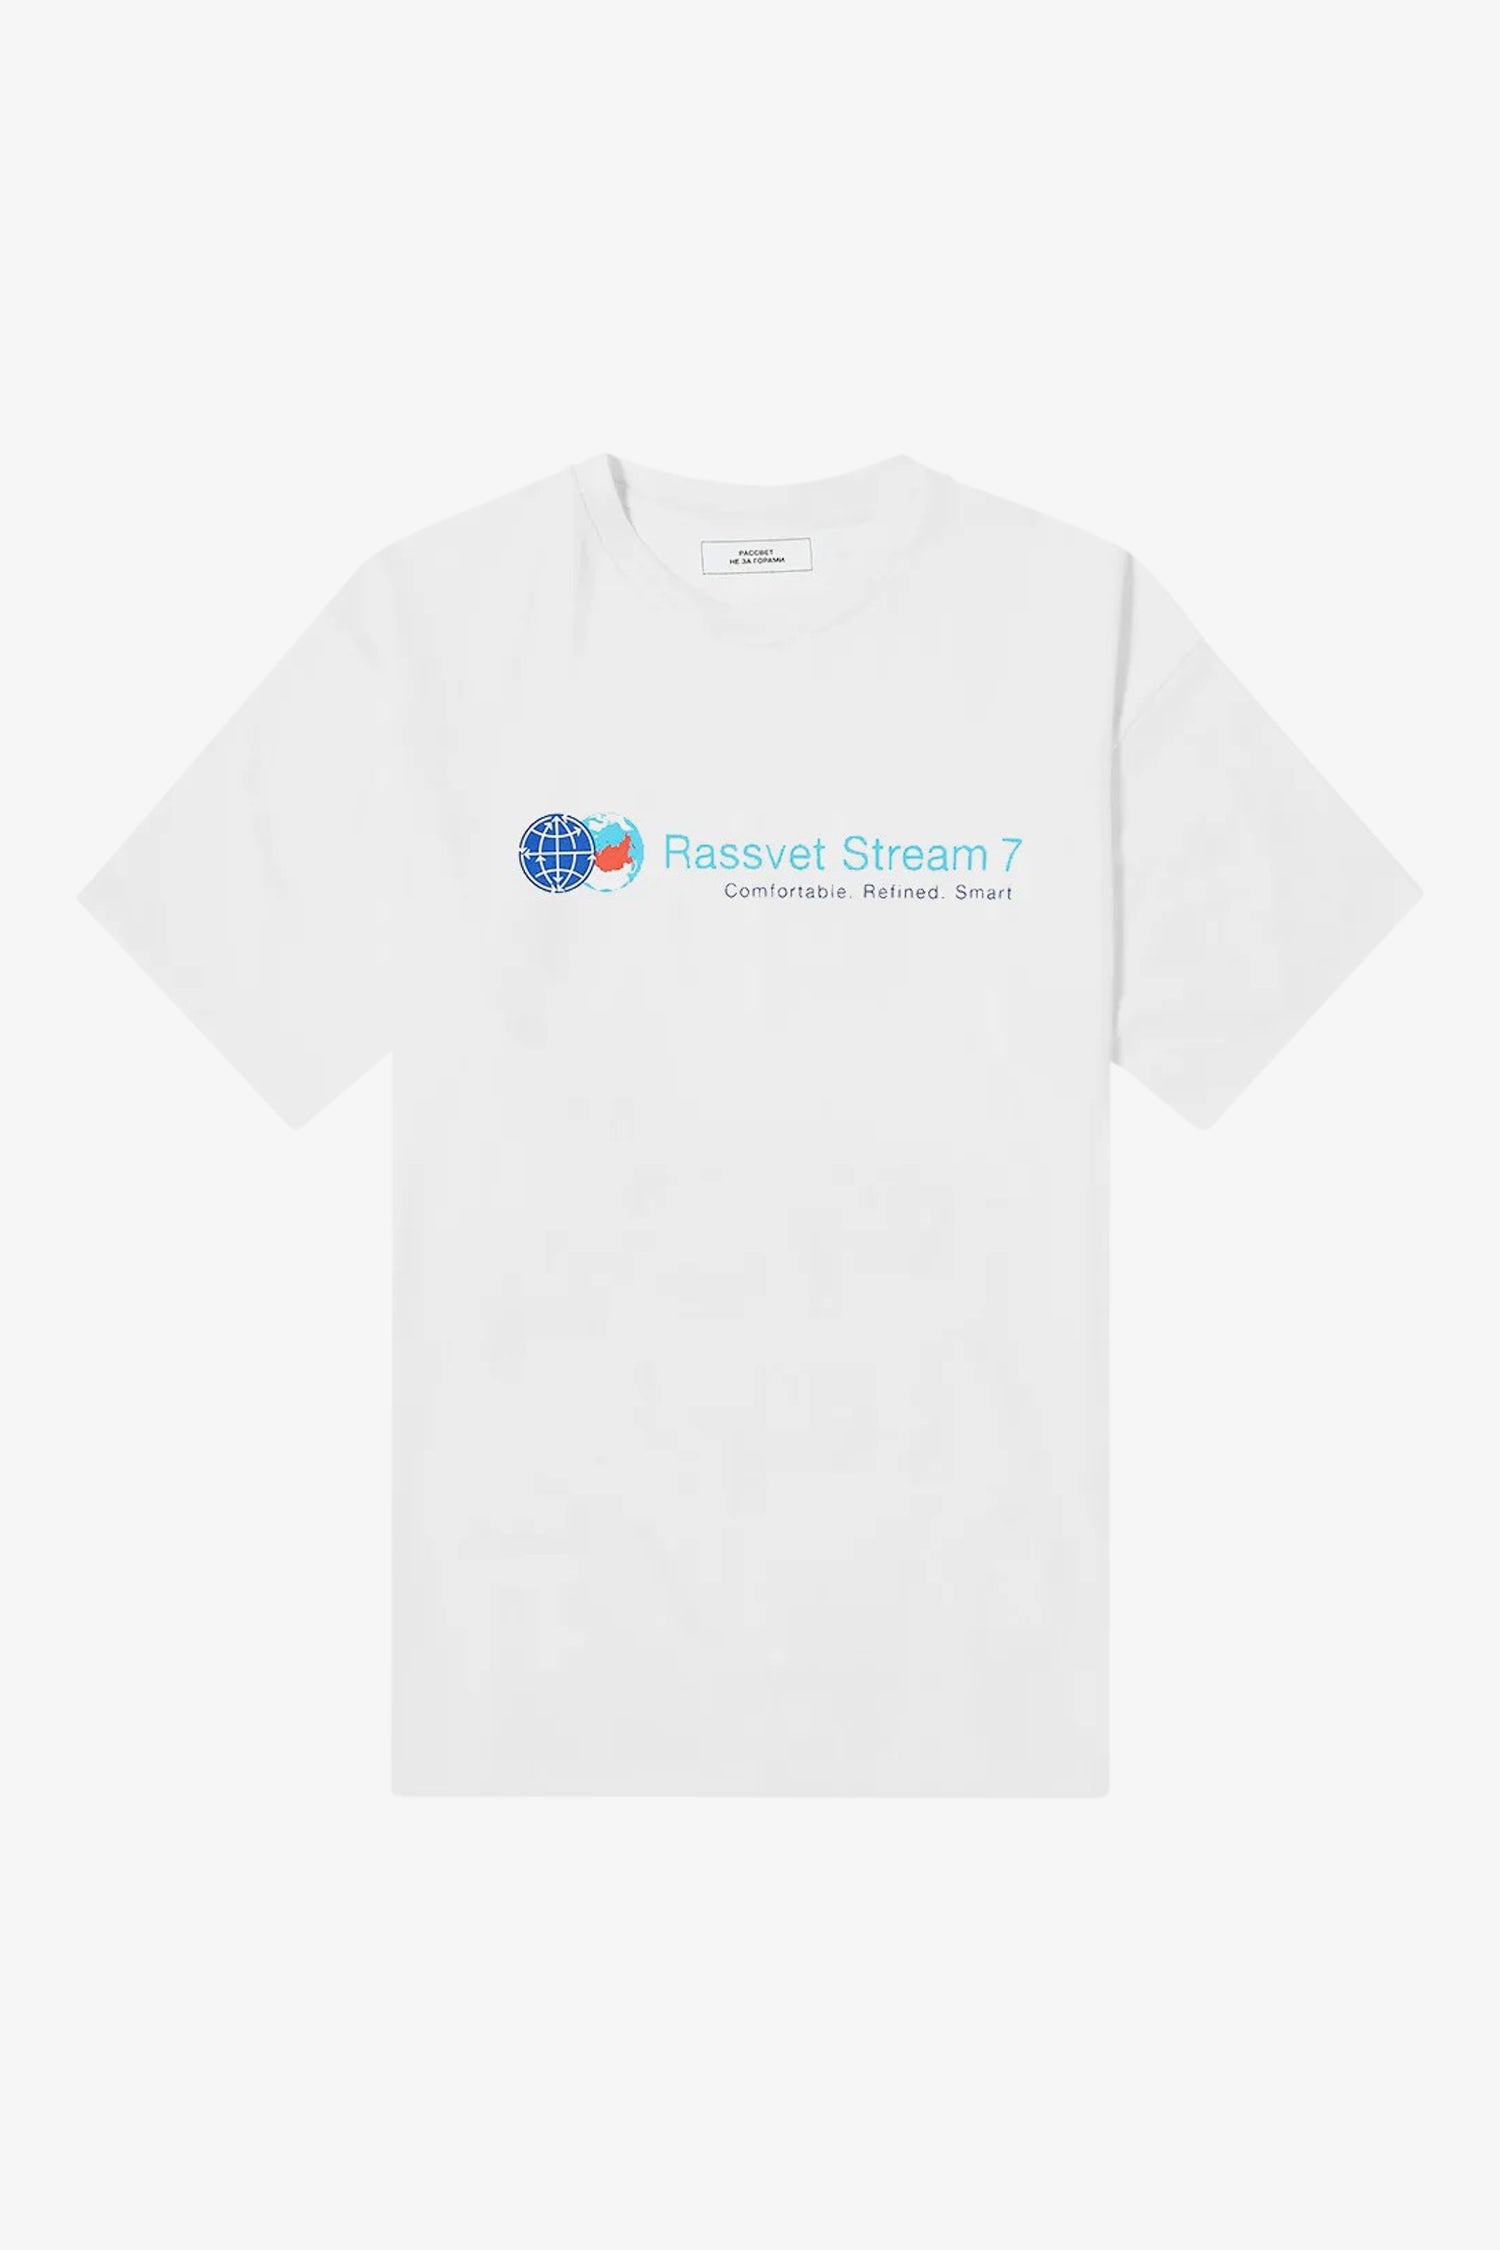 Selectshop FRAME - RASSVET Stream 7 T-Shirt T-Shirt Dubai